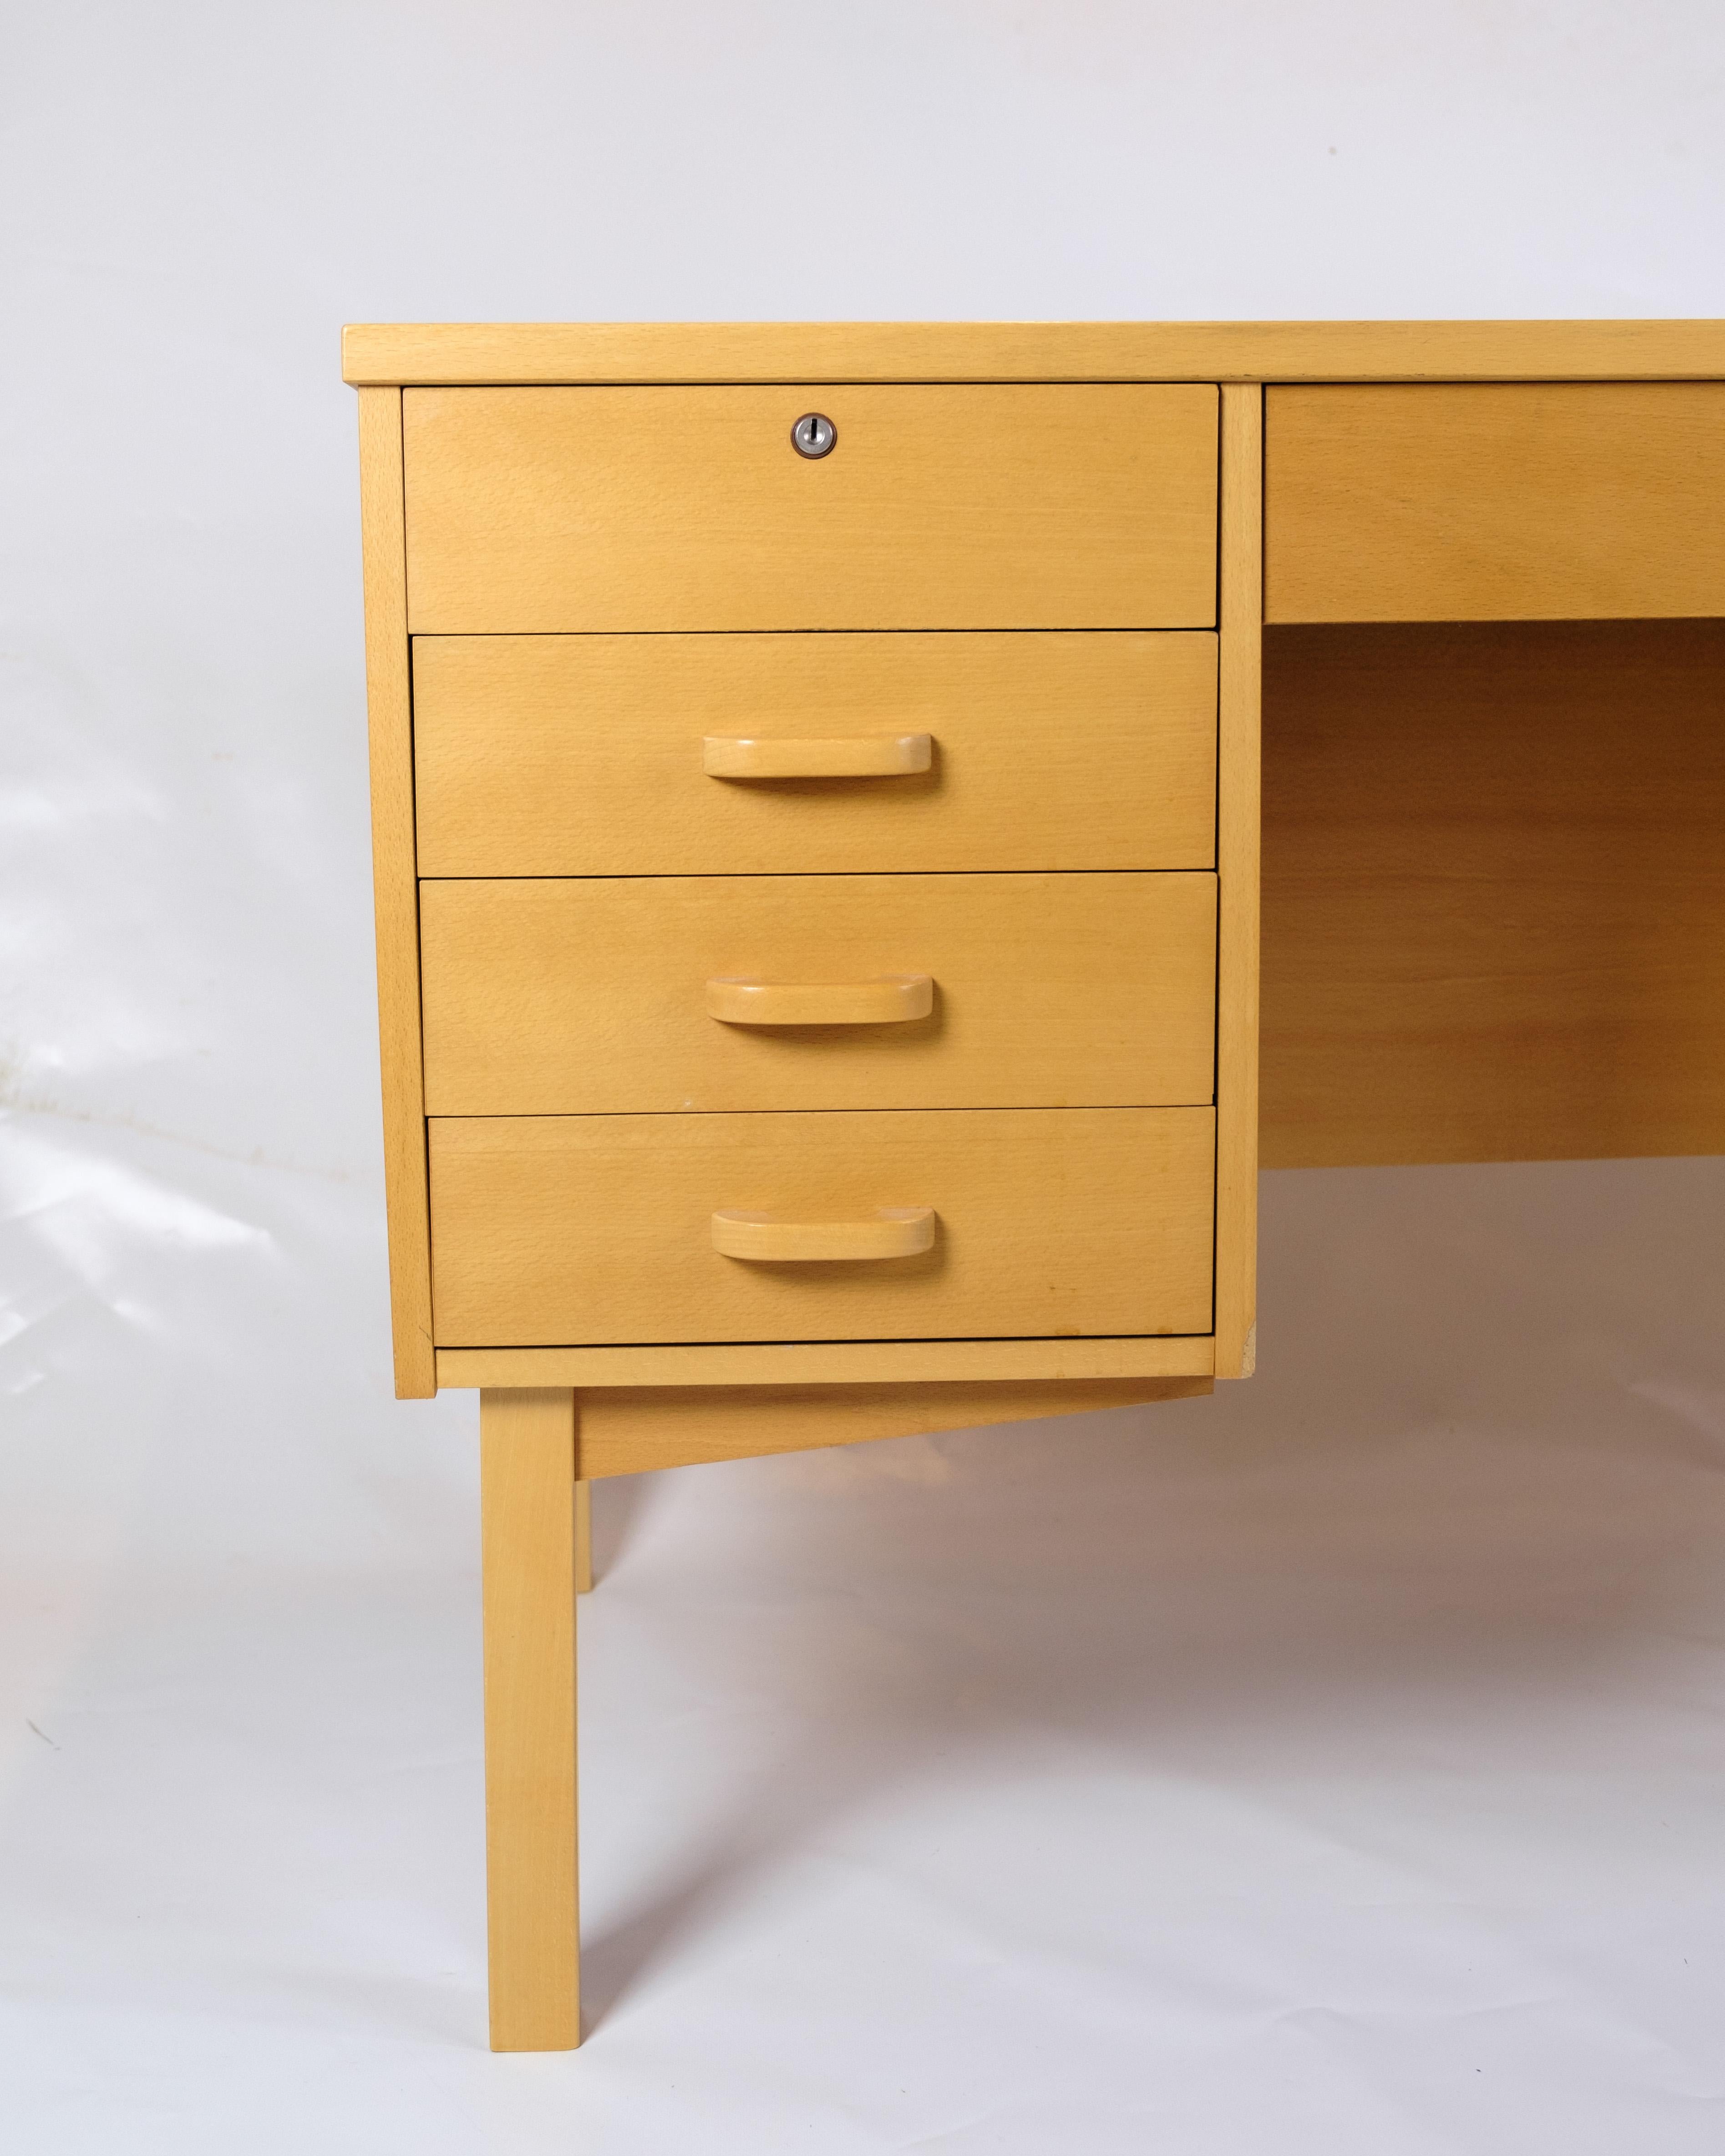 Ce bureau est un excellent exemple du design danois des années 1960. Fabriqué en bois de hêtre, il dégage une élégance et une simplicité intemporelles, caractéristiques du design scandinave. Avec son design fin et fonctionnel, ce bureau s'intègre